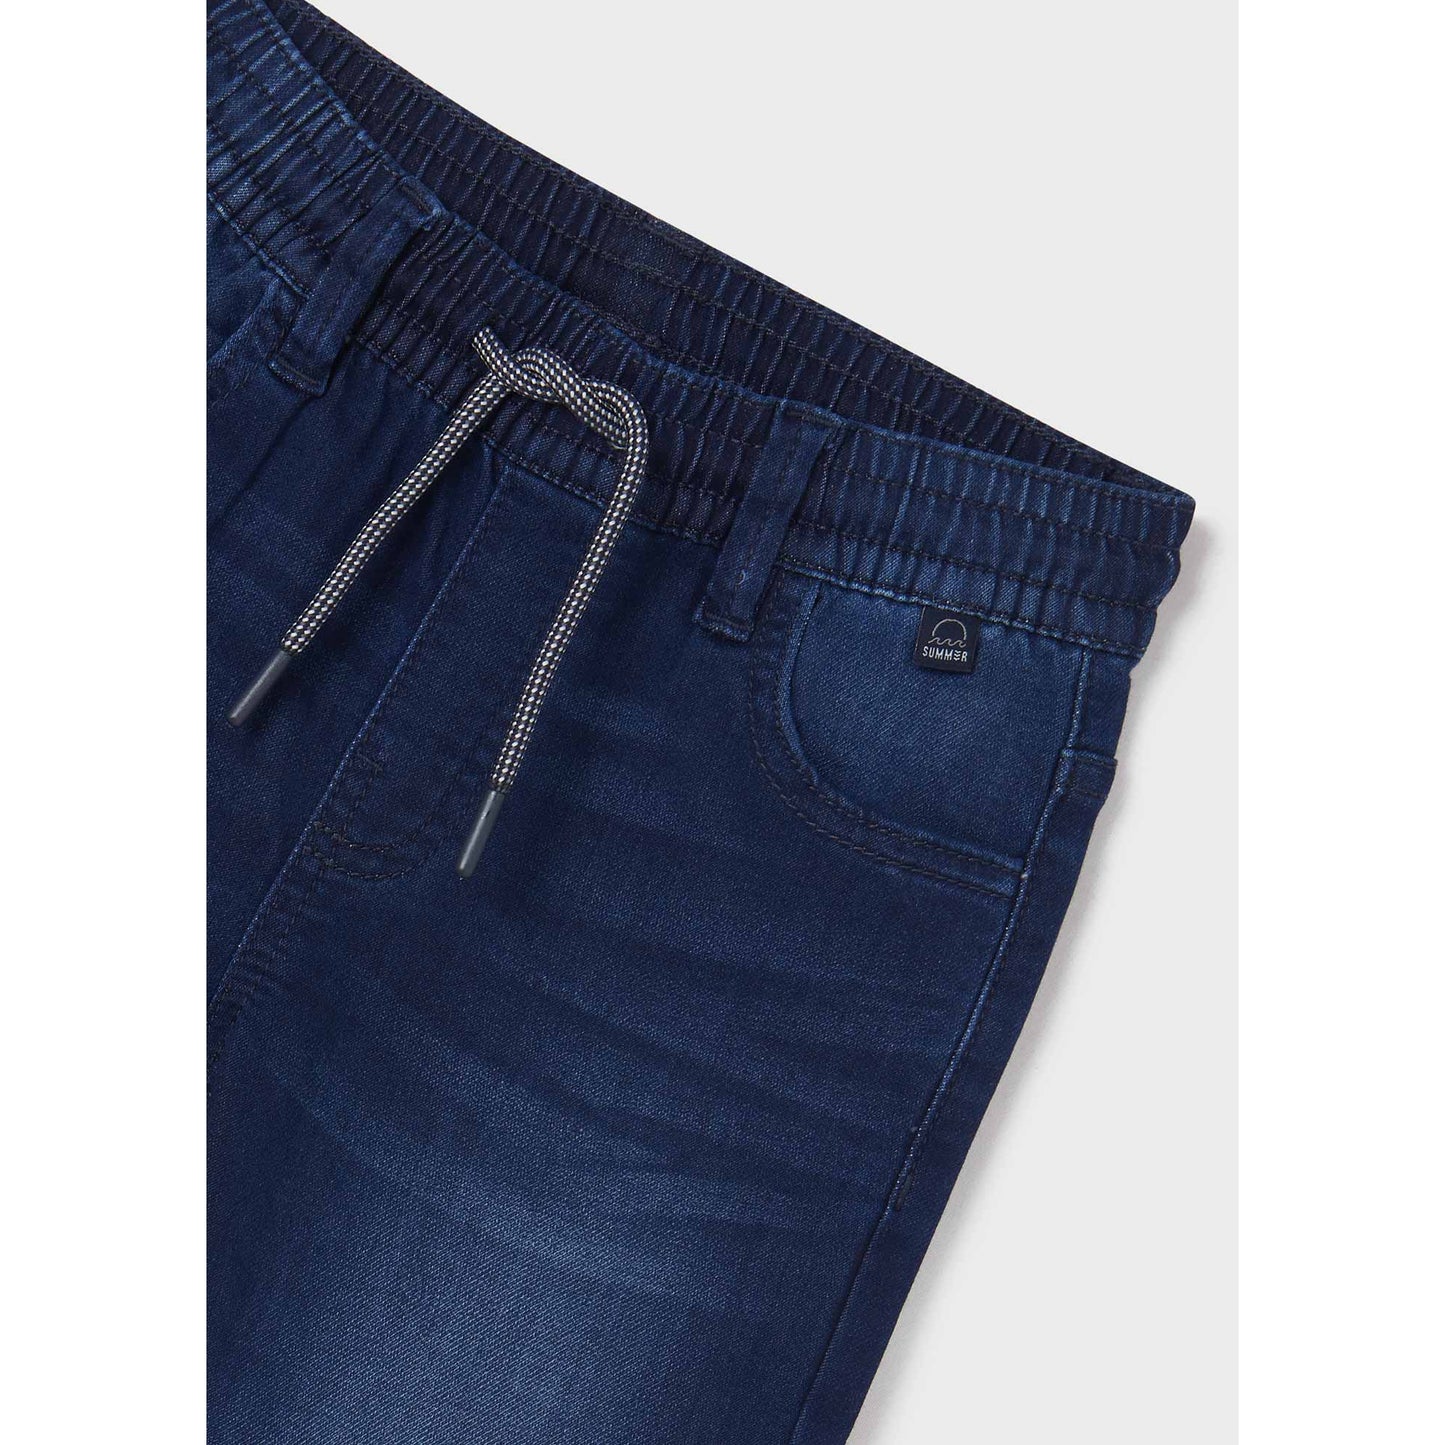 Nukutavake Bermuda Soft Denim Shorts _Medium Blue 6213-65